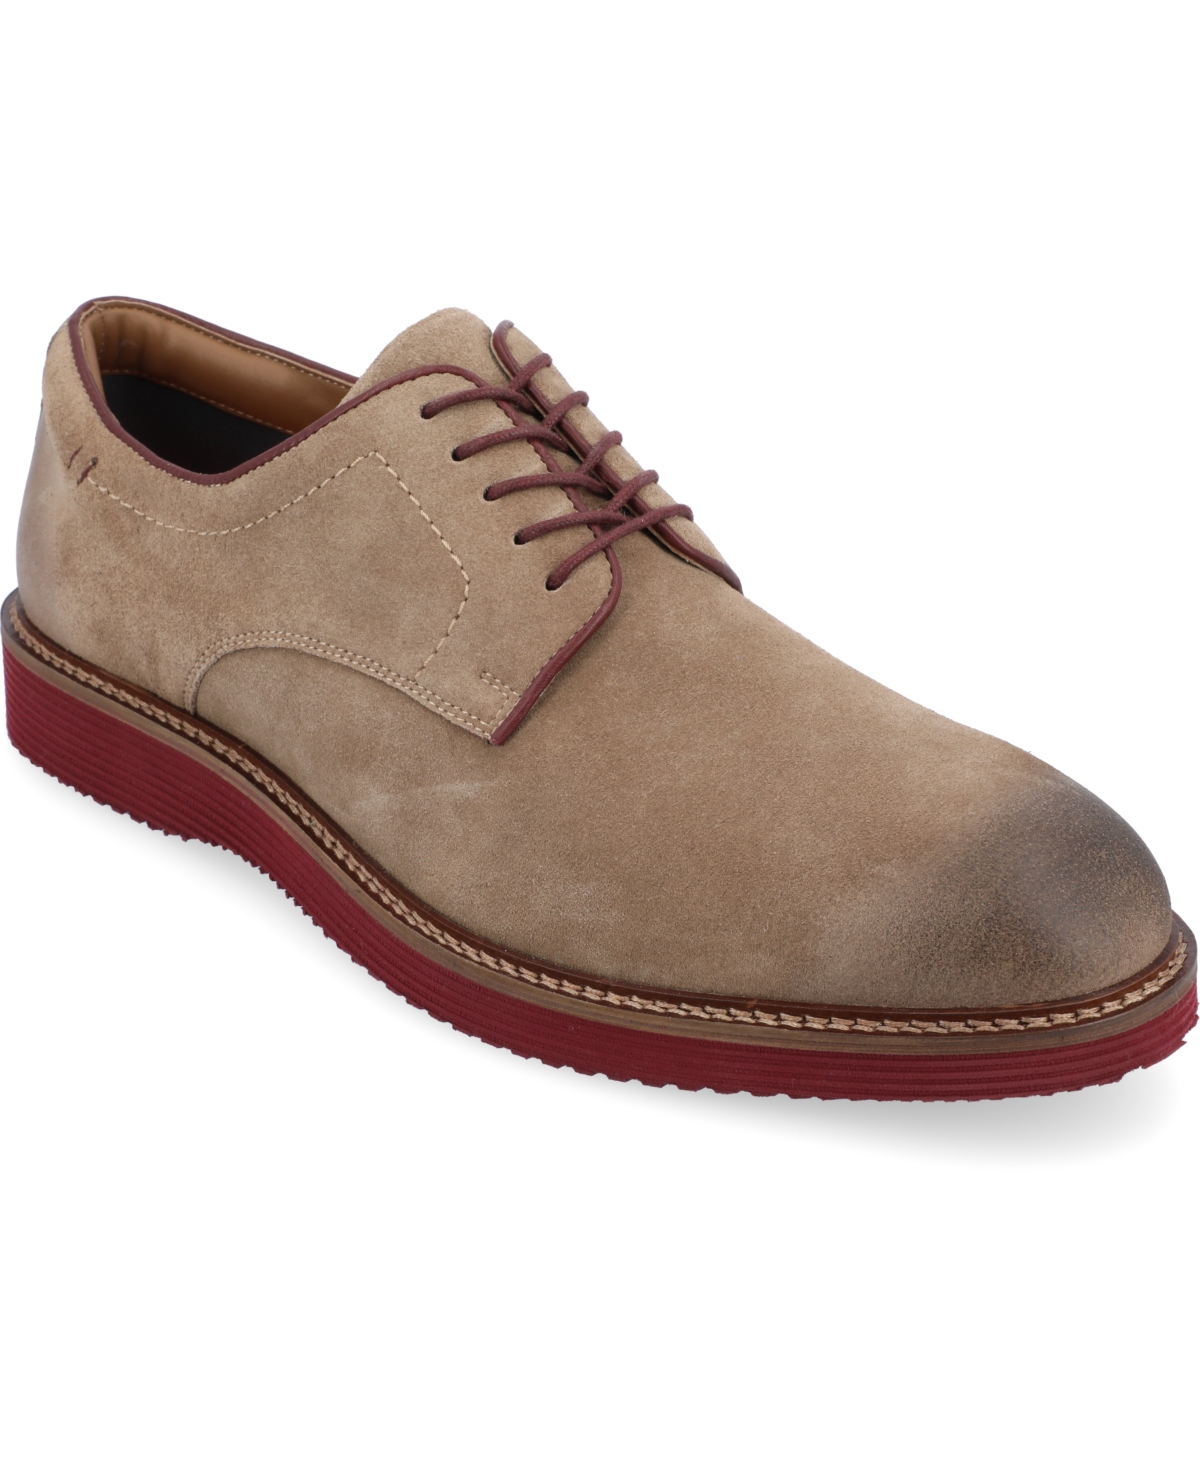 Men's Seneca Plain Toe Derby Casual Shoes - Taupe